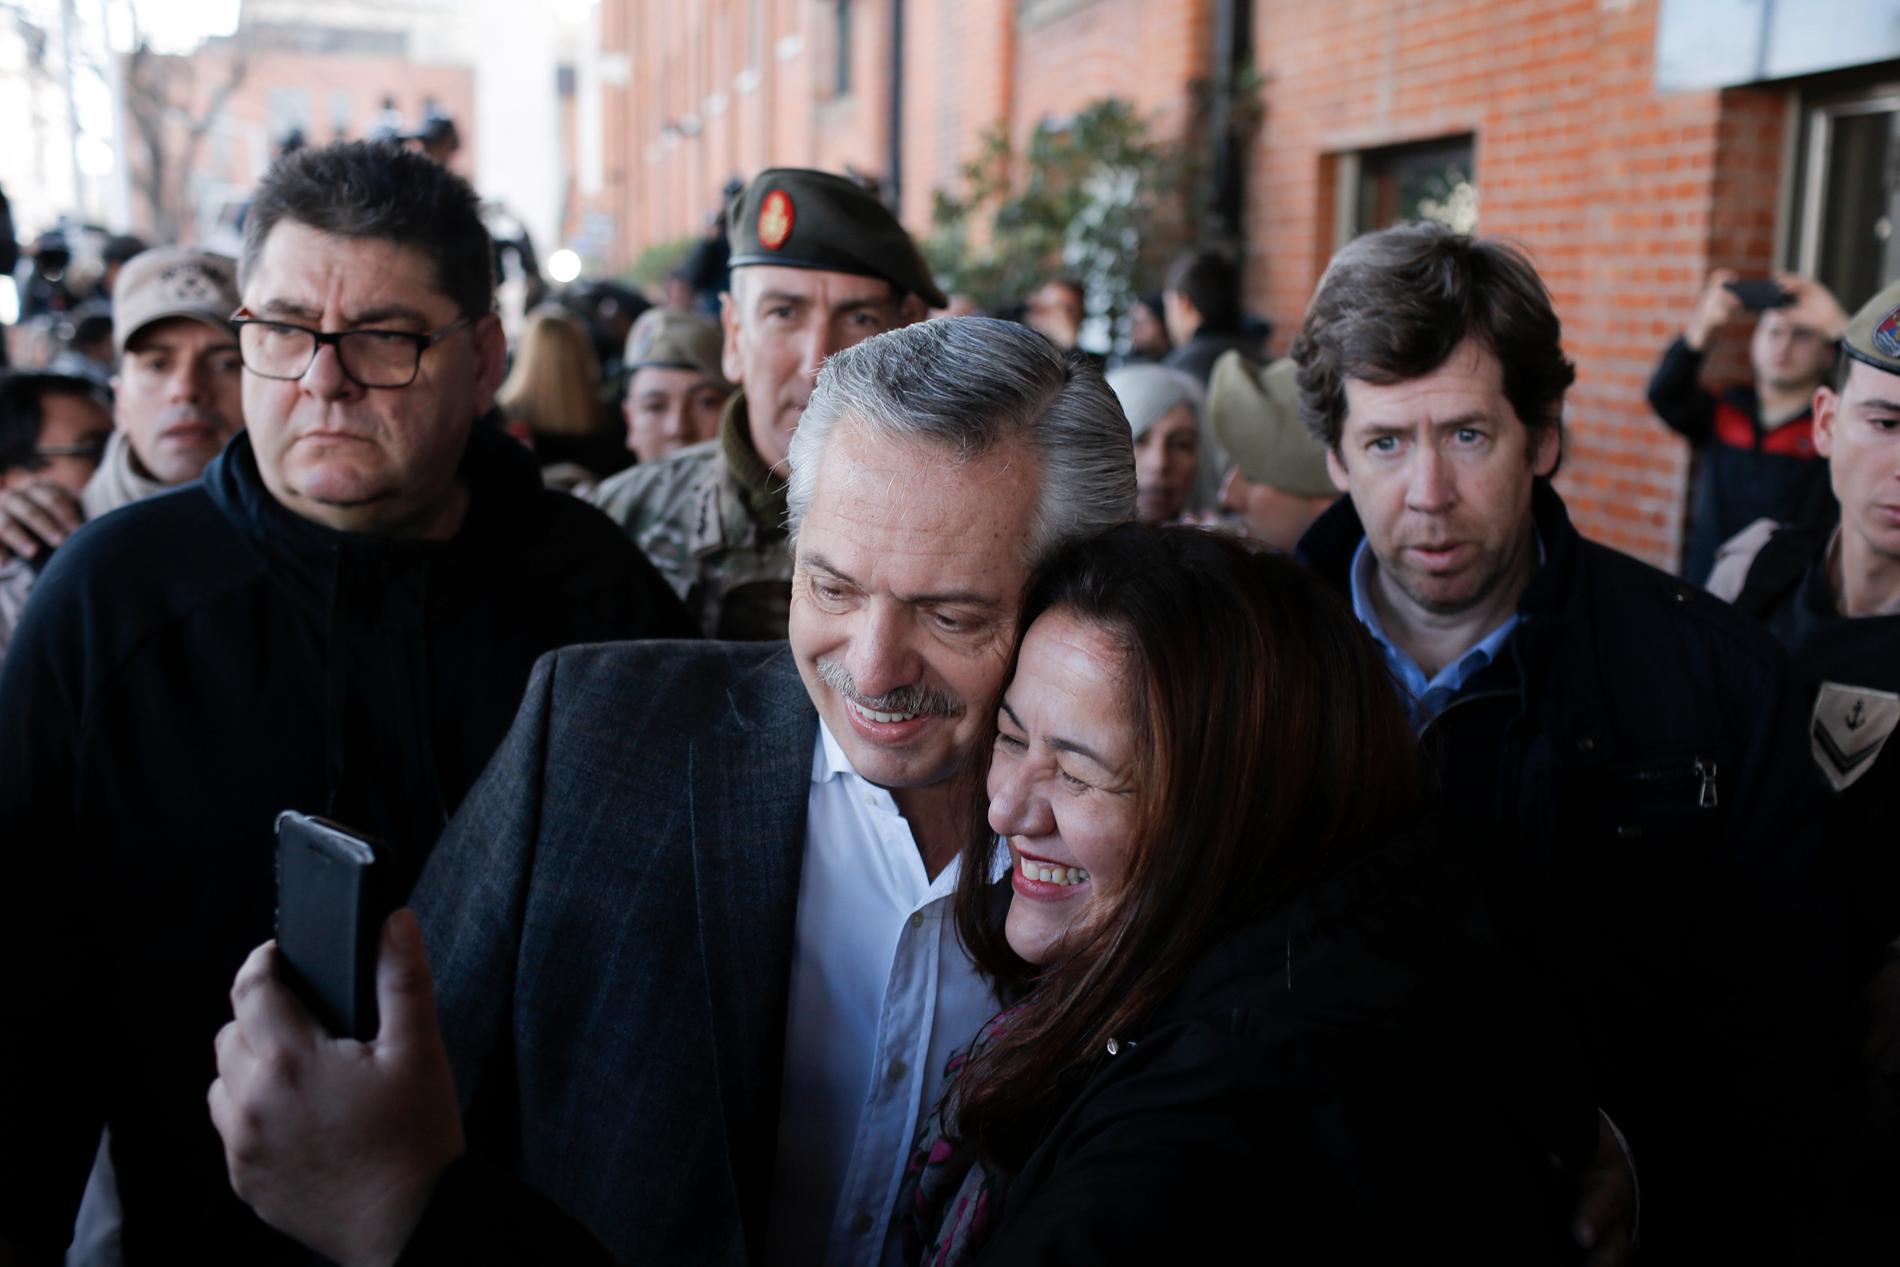 Alberto Fernández låter sig fotograferas med en anhängare i samband med röstningen på söndagen.